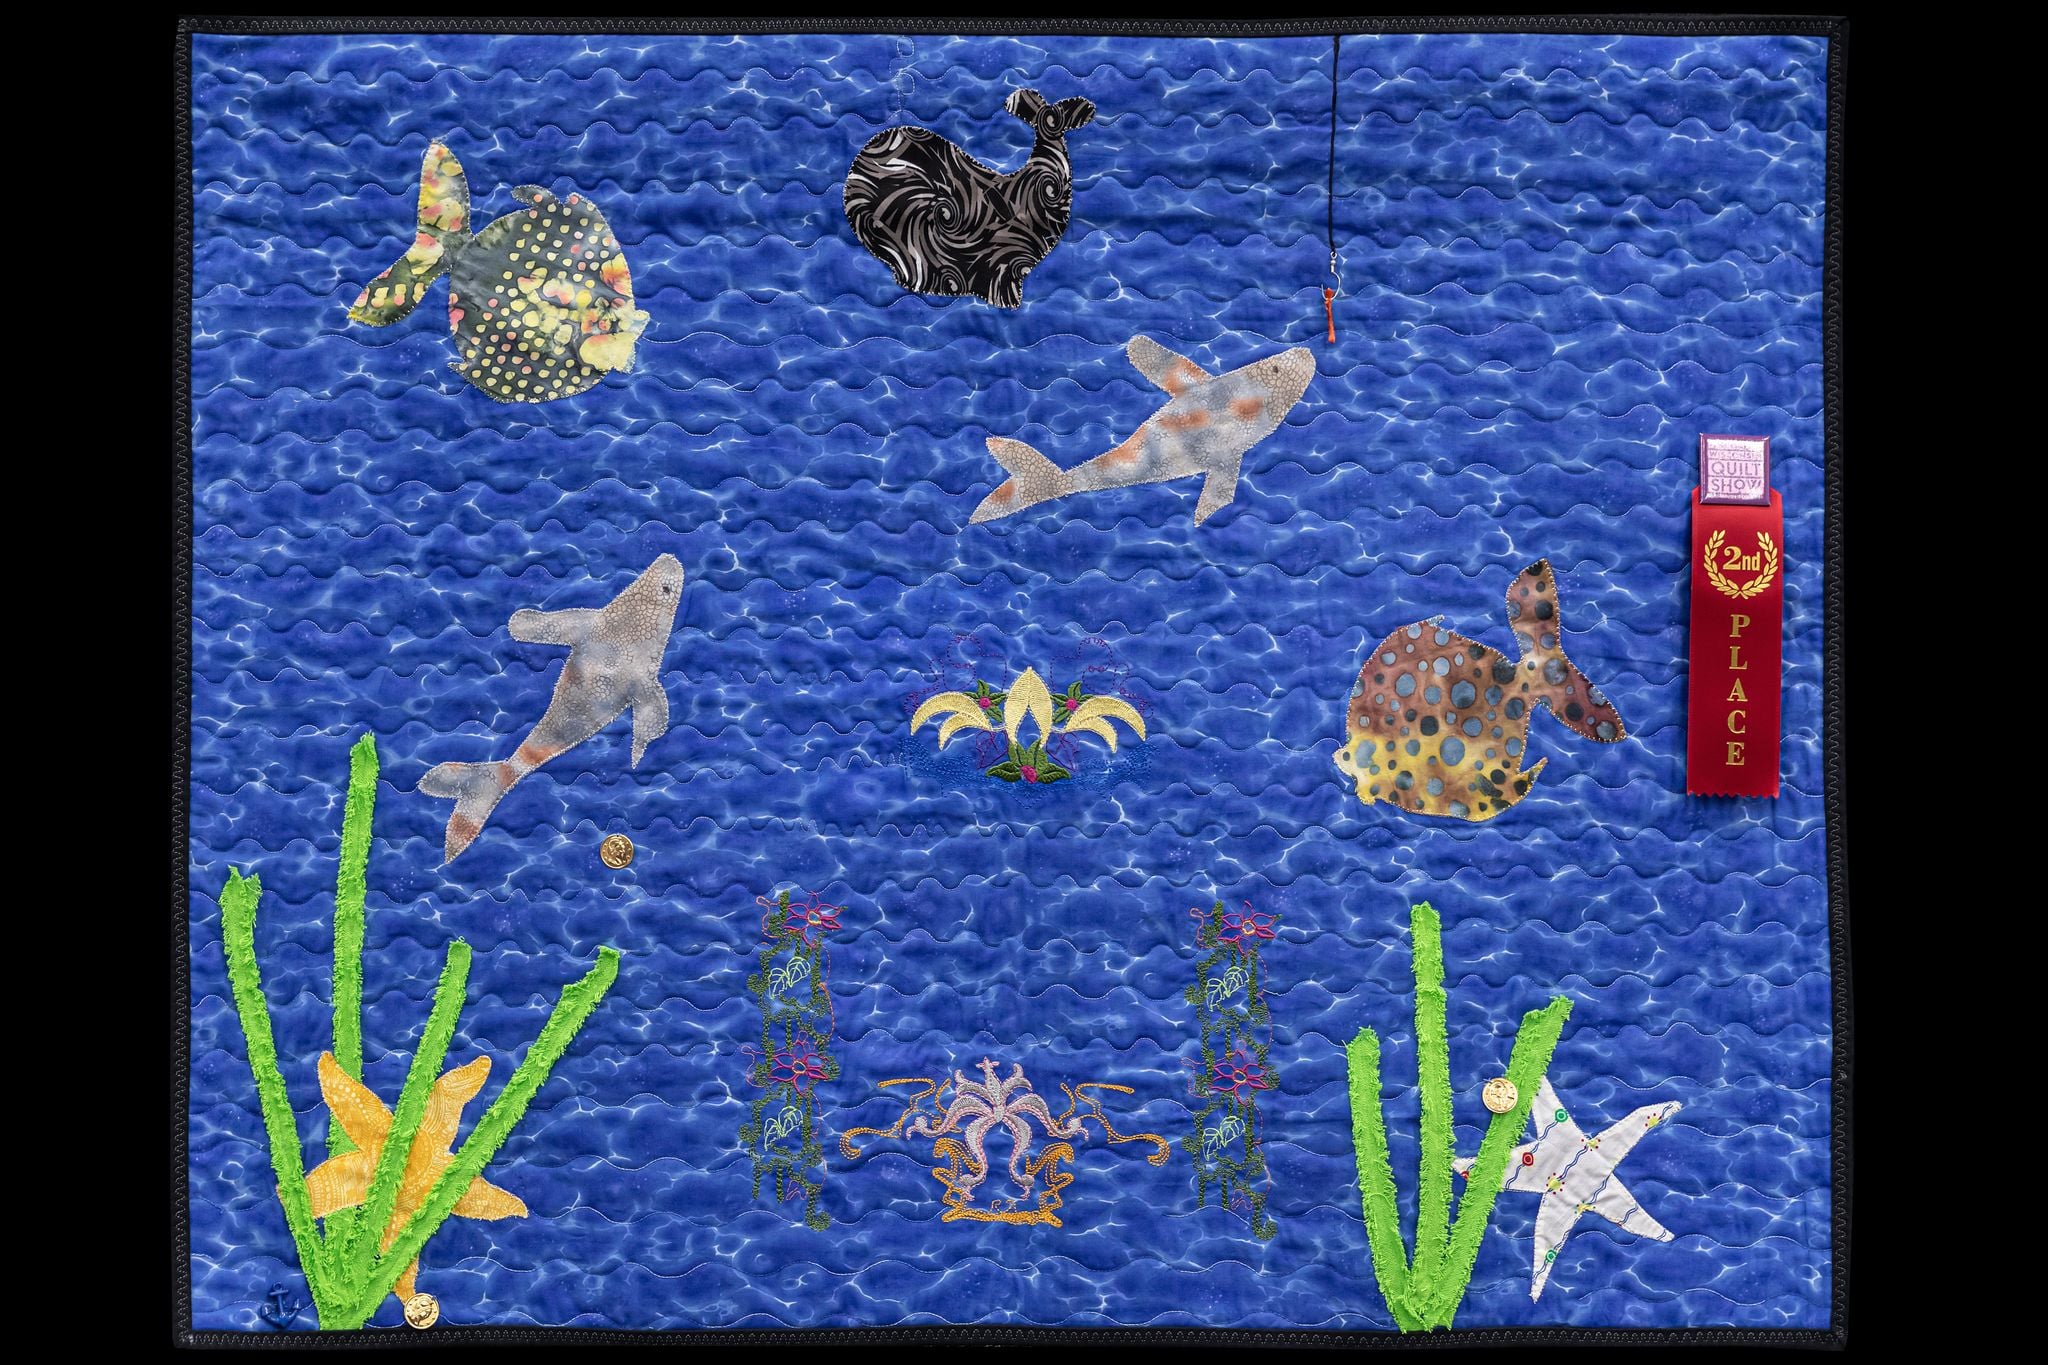 2020 Kid's challenge entry, The Underwater Kingdom quilt